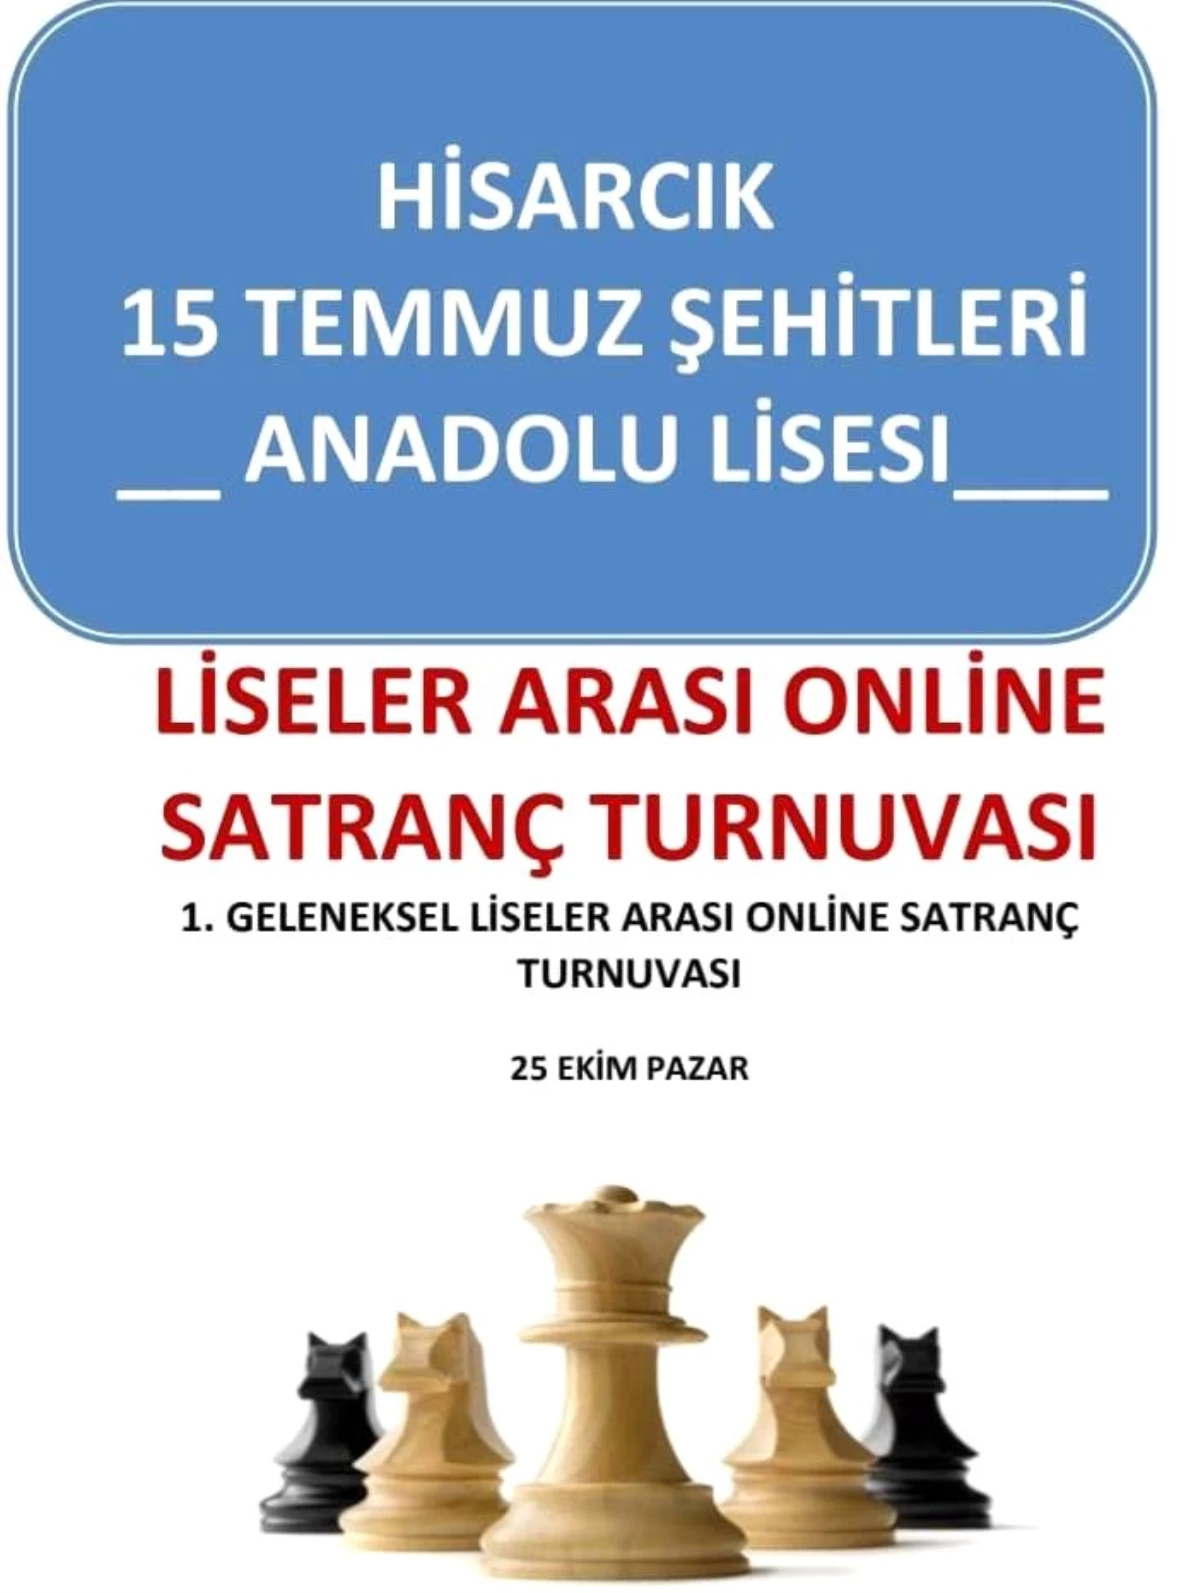 Son dakika haberi... Hisarcık\'ta Liseler Arası Online Satranç Turnuvası